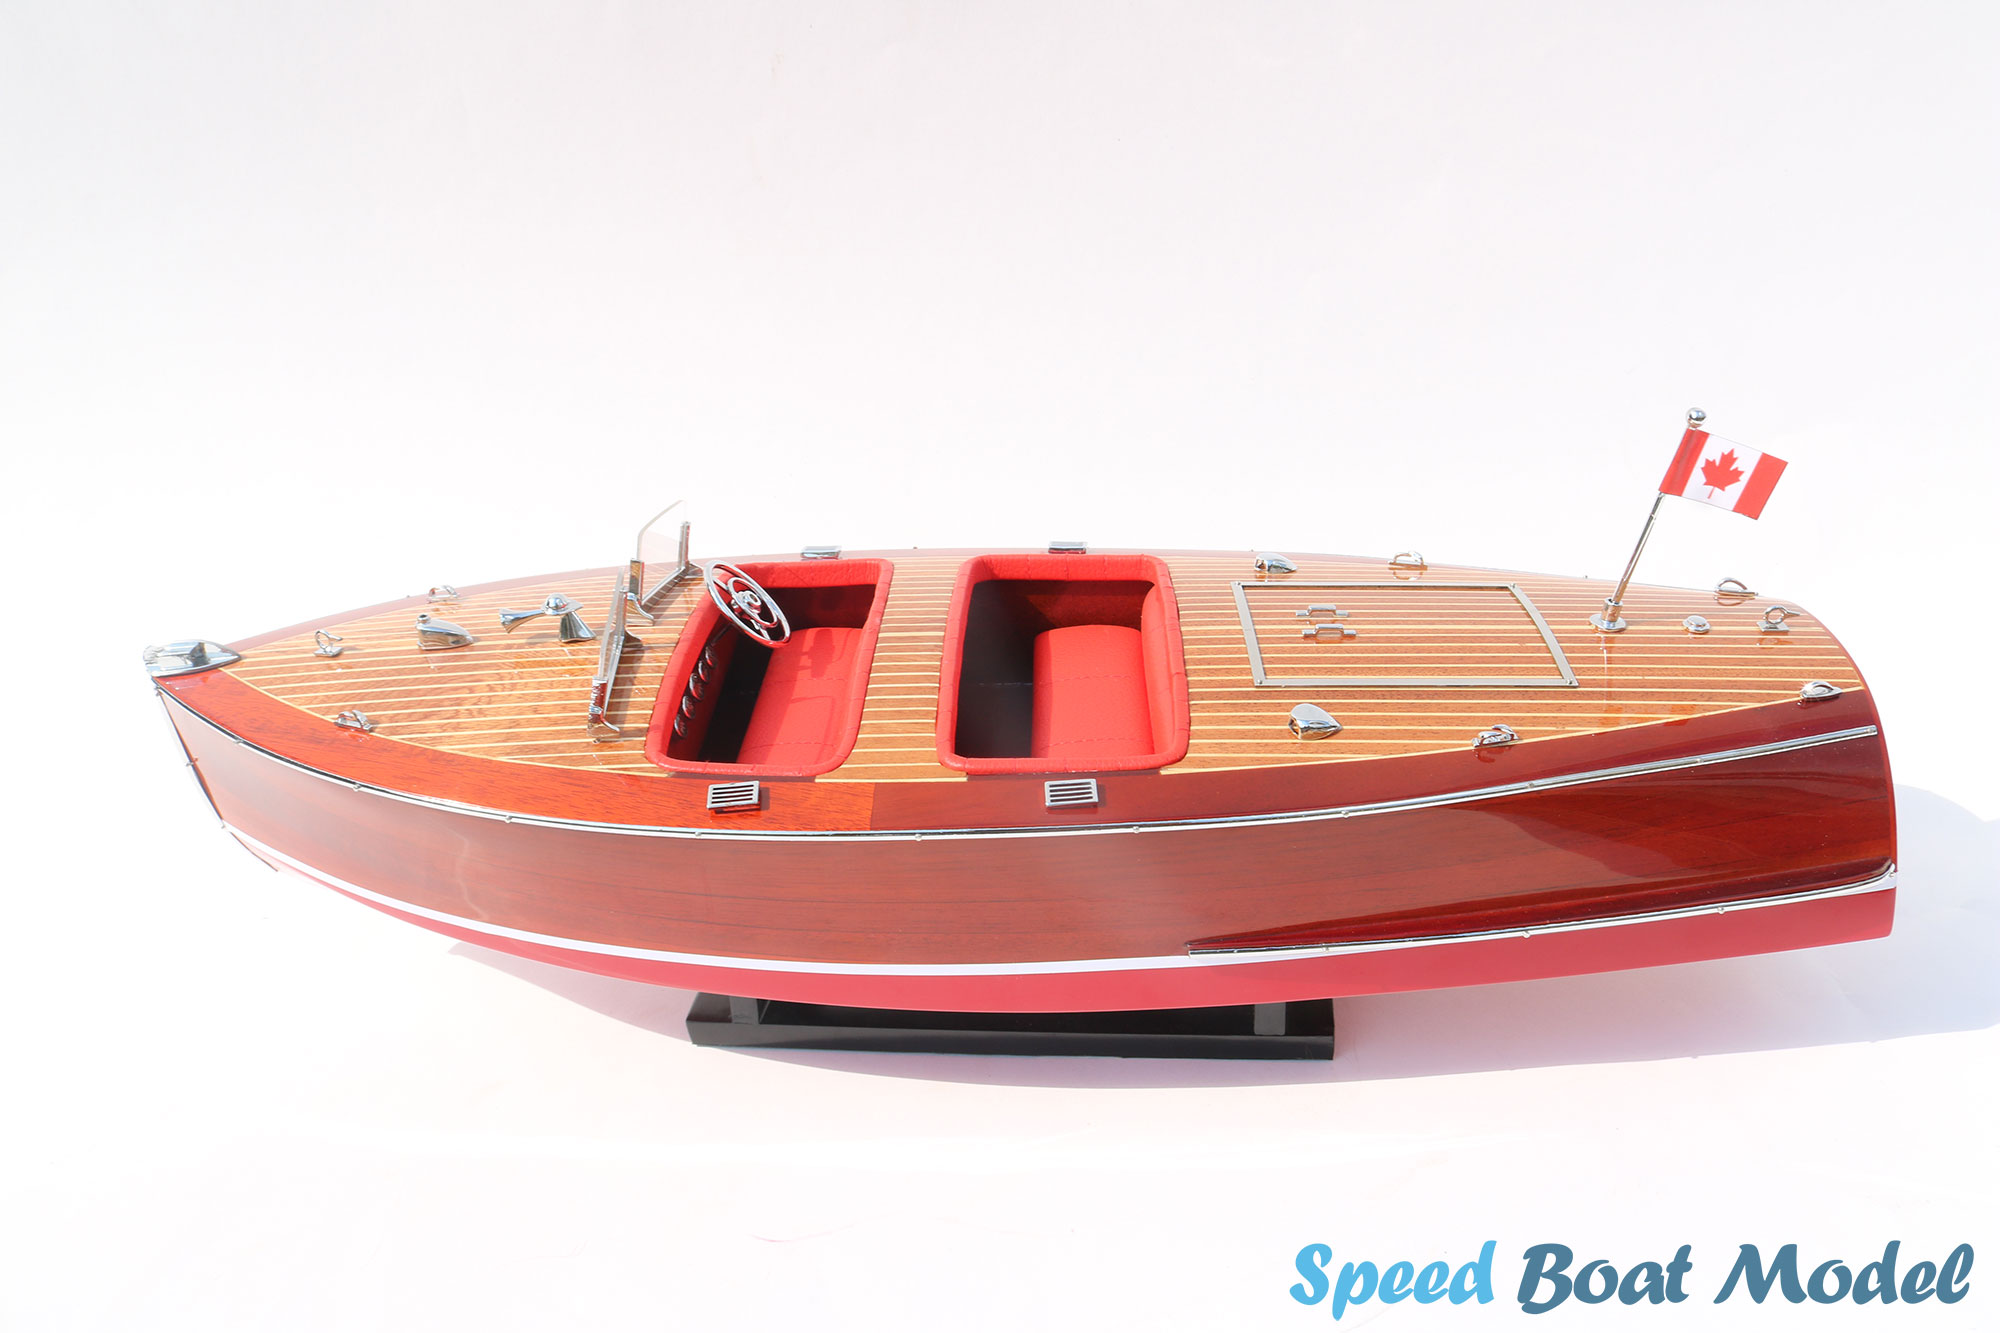 Red Chris Craft Barrel Back 1940 Speed Boat Model 33.6"